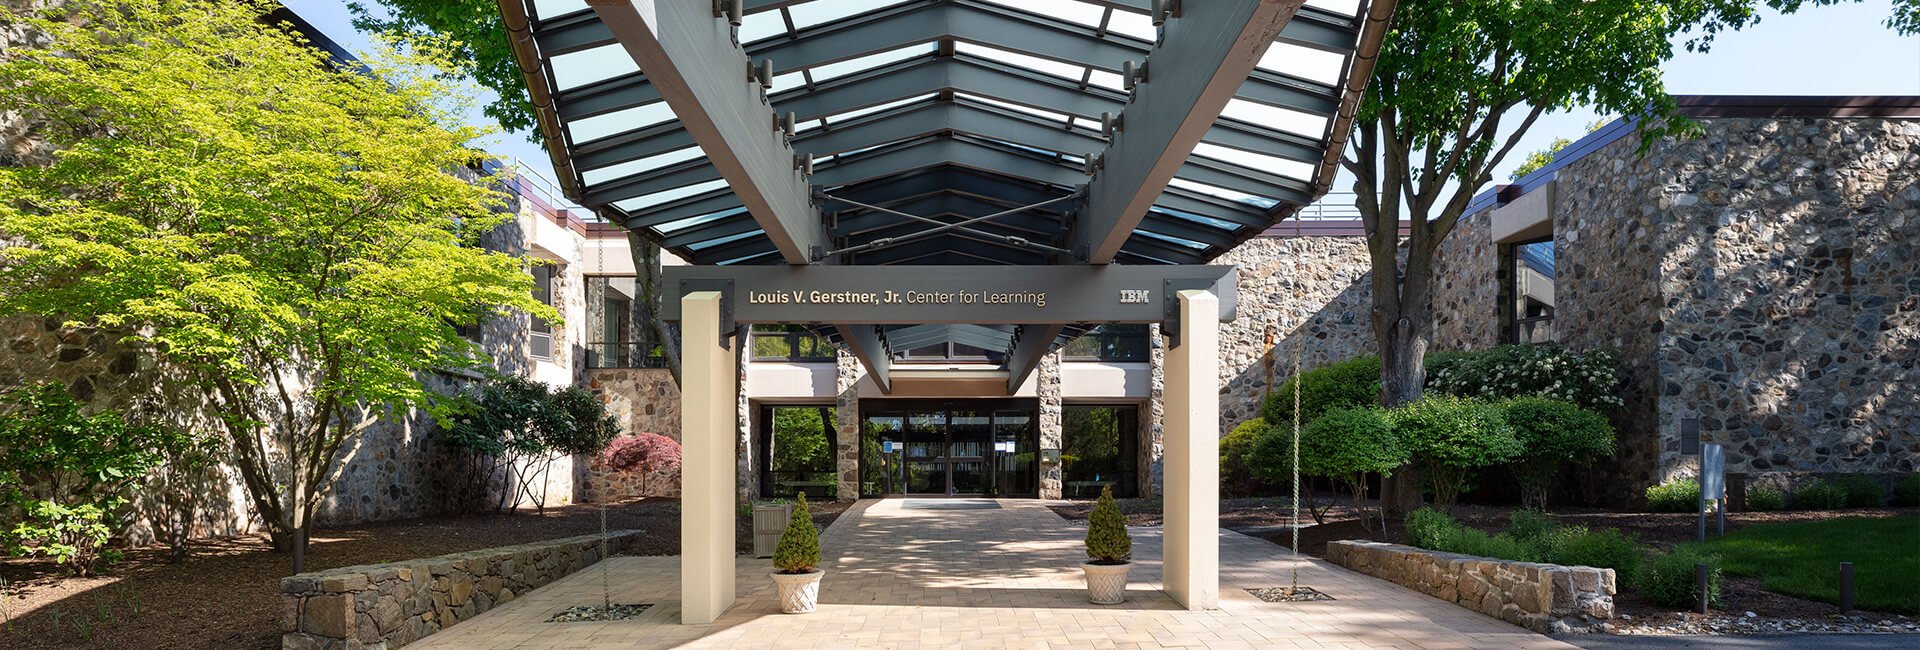 The Louis V. Gerstner, Jr. Center for Learning | Main Entrance